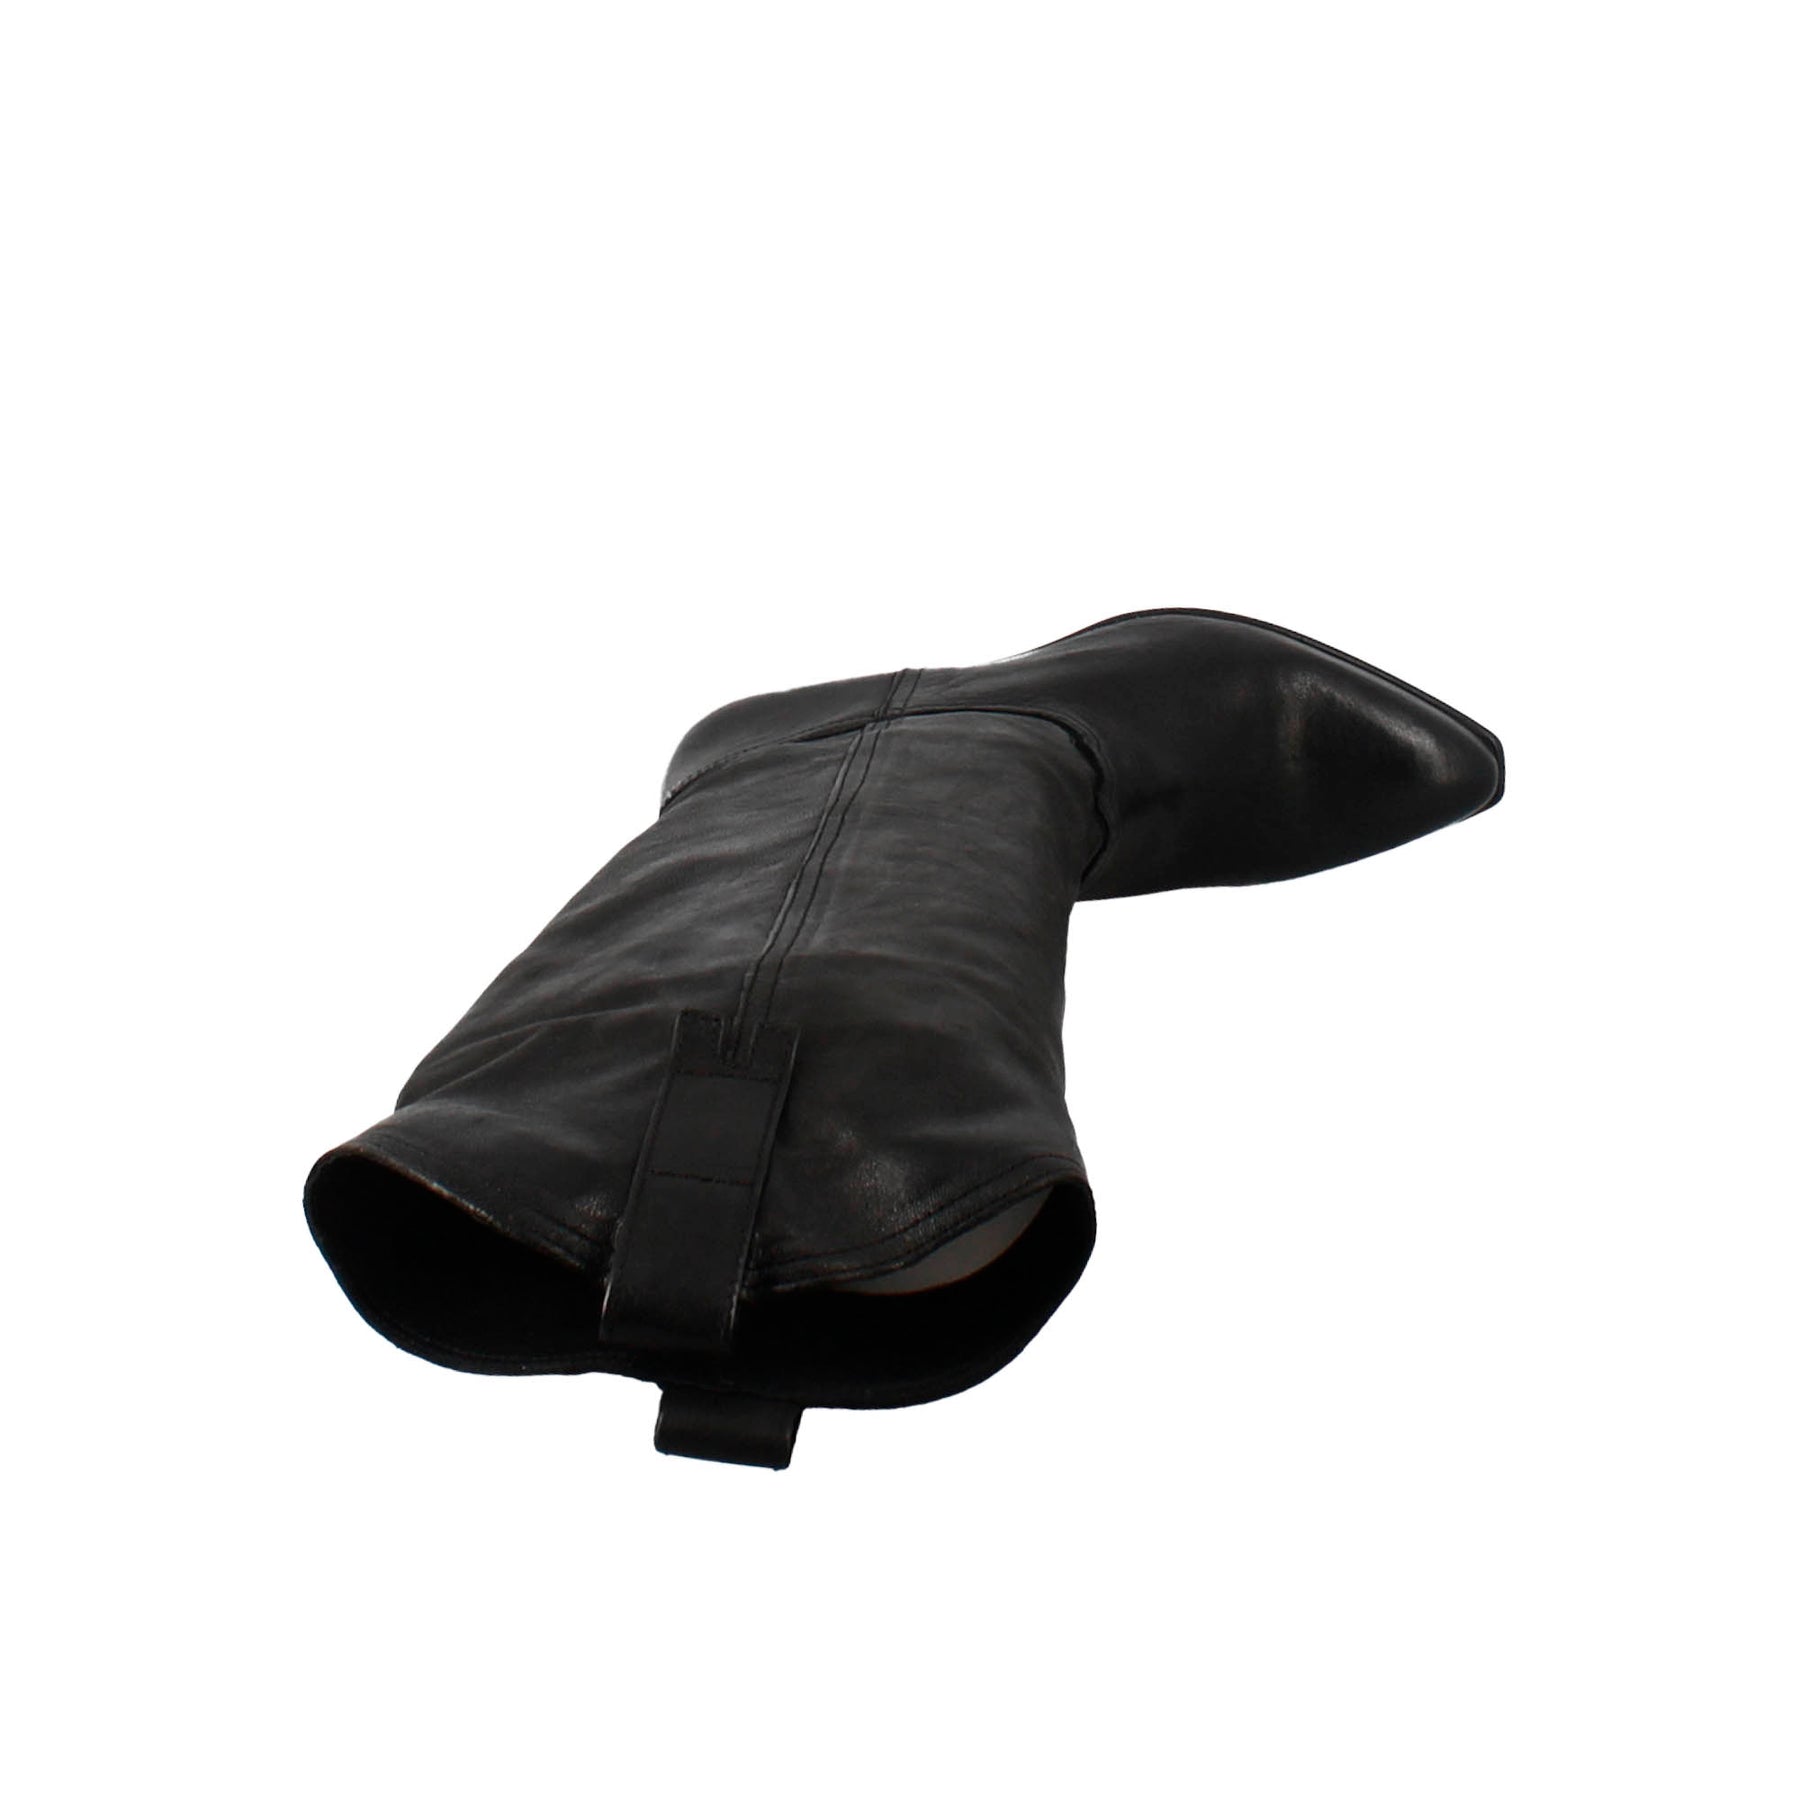 Bottes texanes hautes pour femmes en cuir noir avec fermeture éclair